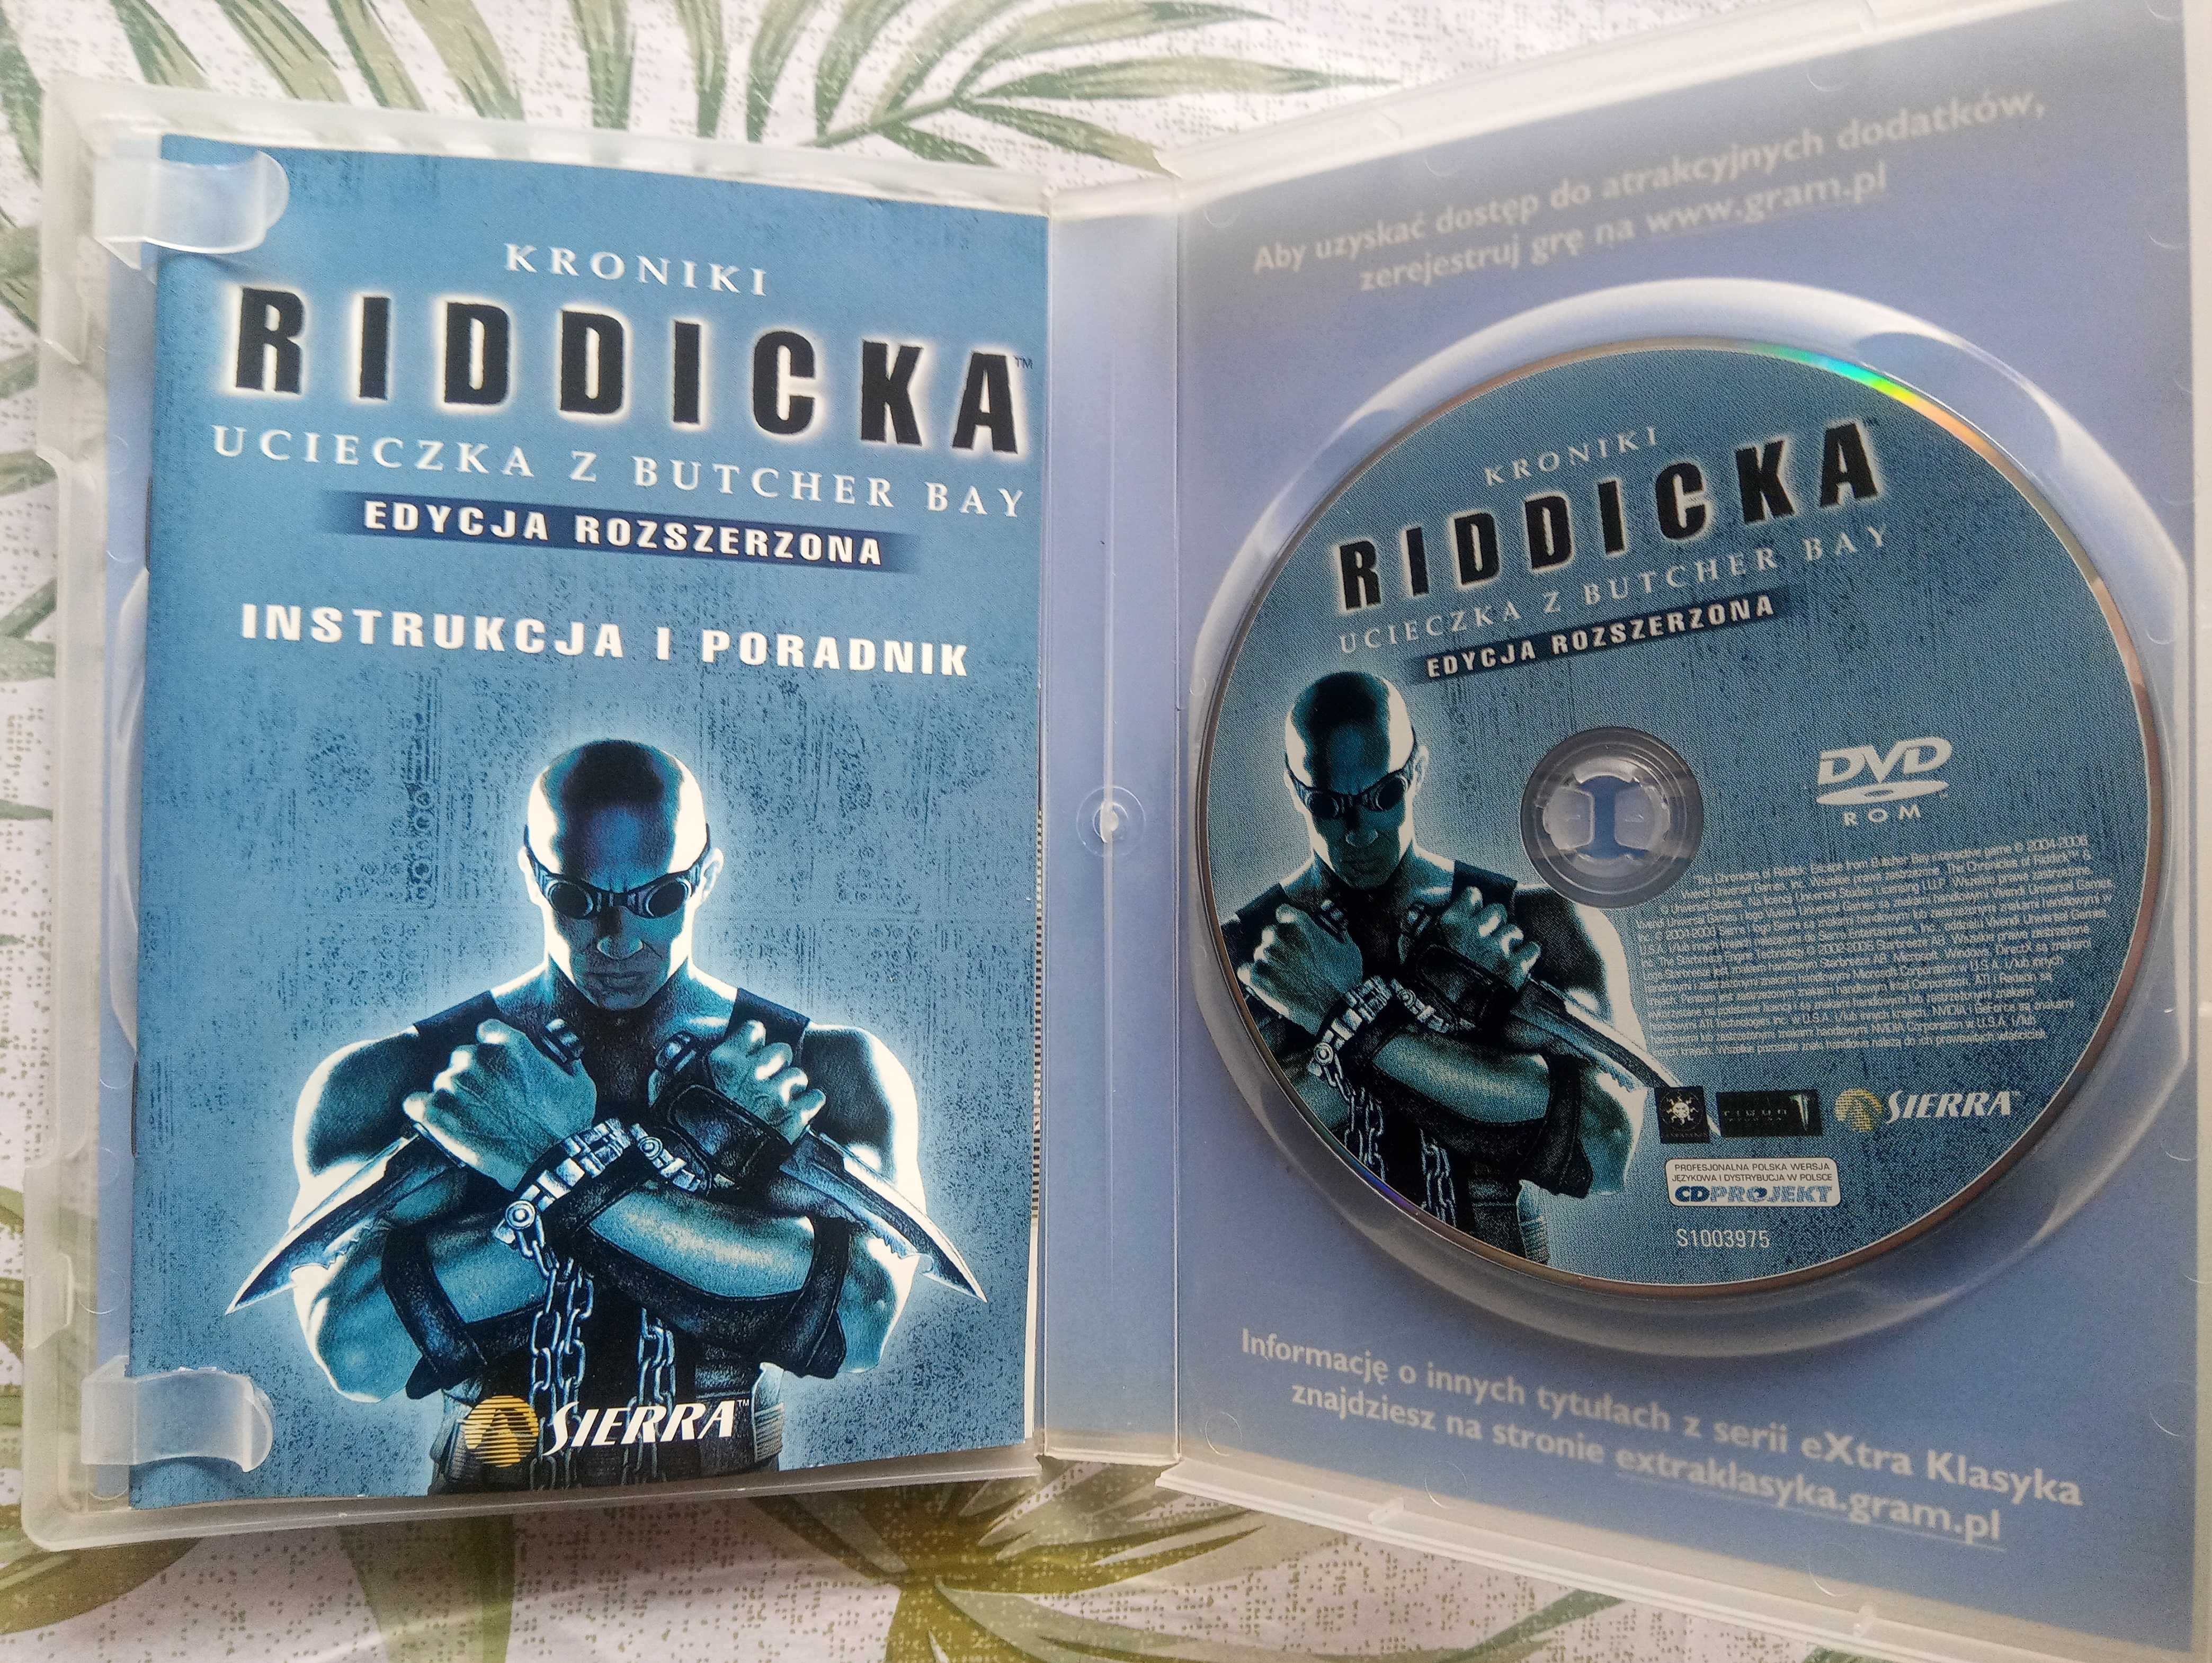 Kroniki Riddicka: Ucieczka z Butcher Bay Edycja Rozszerzona PC